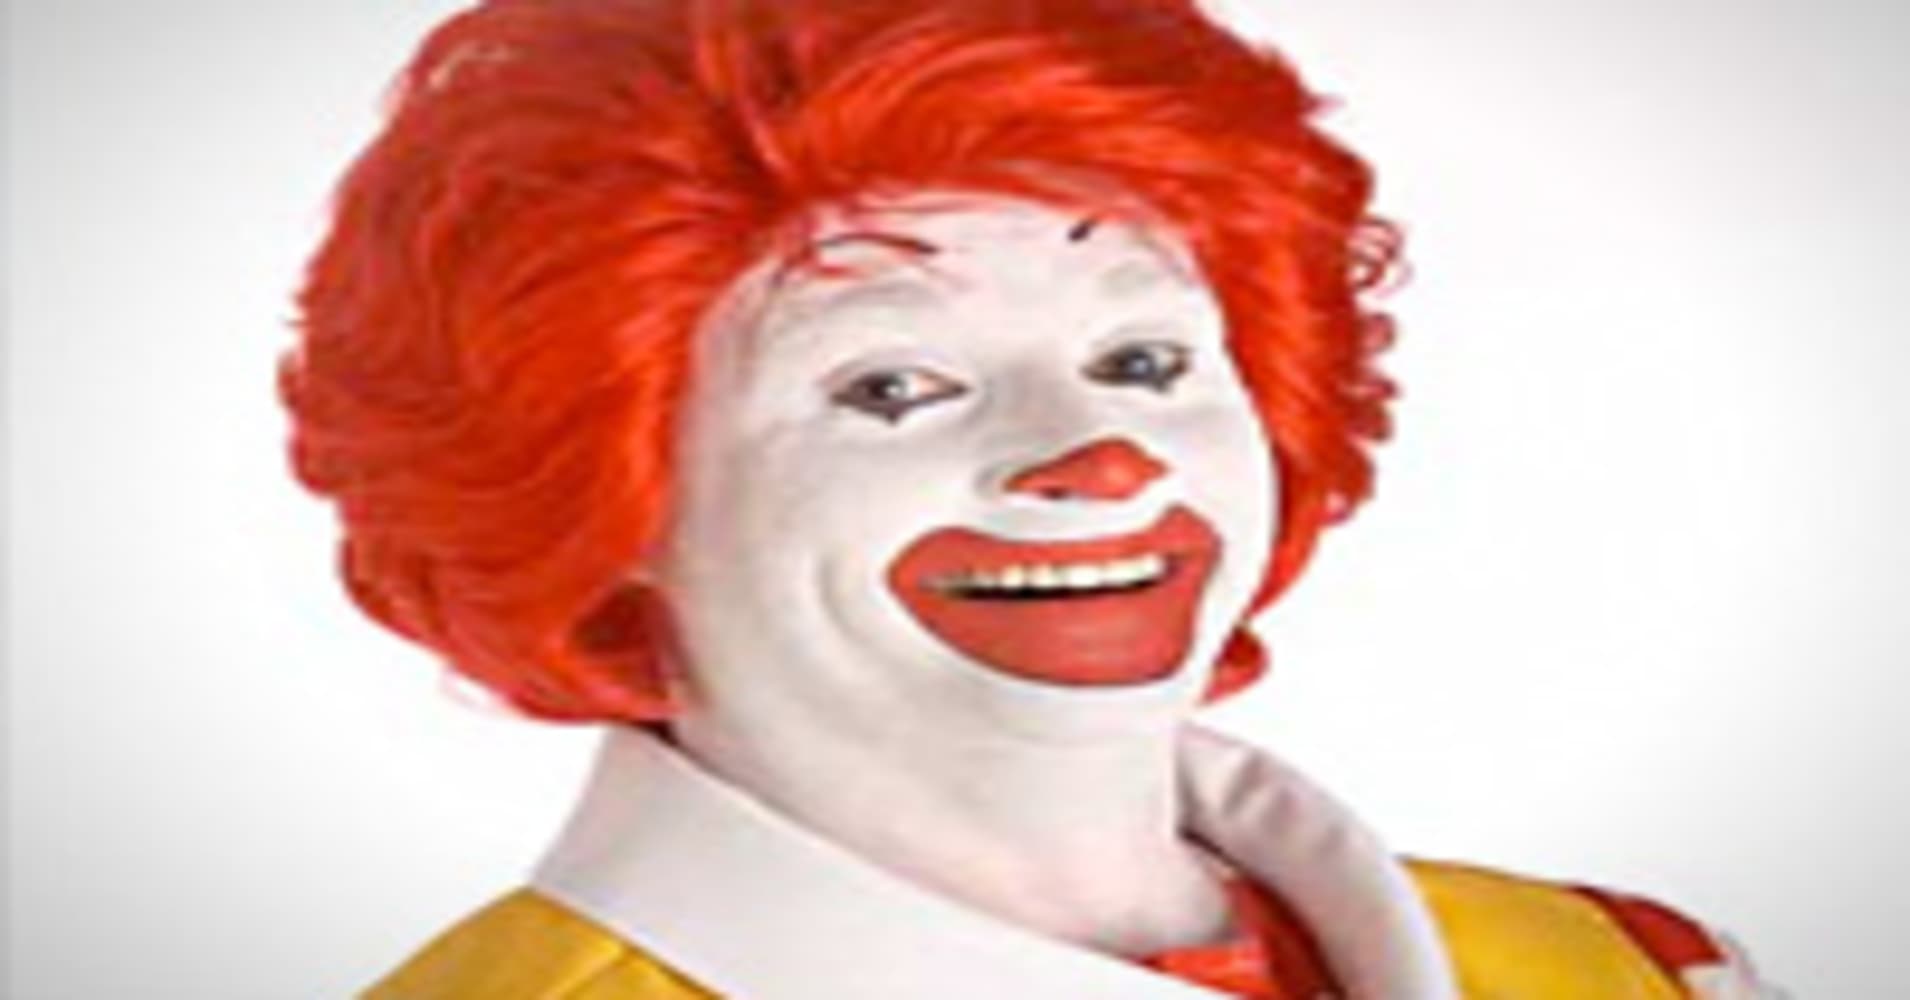 Ronald McDonald's Midlife Crisis